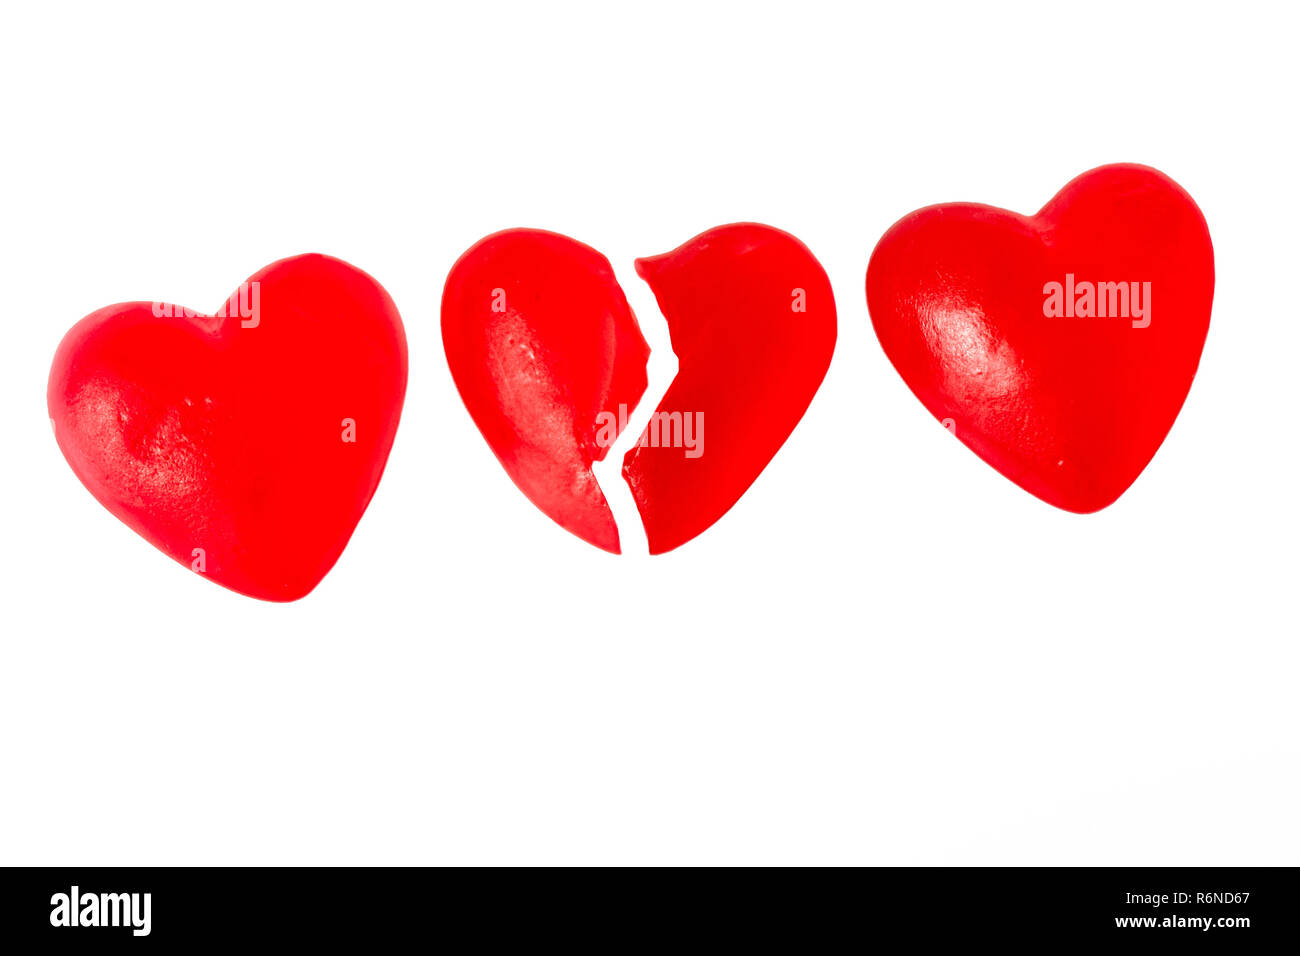 Gebrochene Herzen oder Kummer Konzept mit drei helle rote Gelee Herz geformten Süßigkeiten nebeneinander mit einem Schnitt in der Hälfte auf weißem Hintergrund Stockfoto